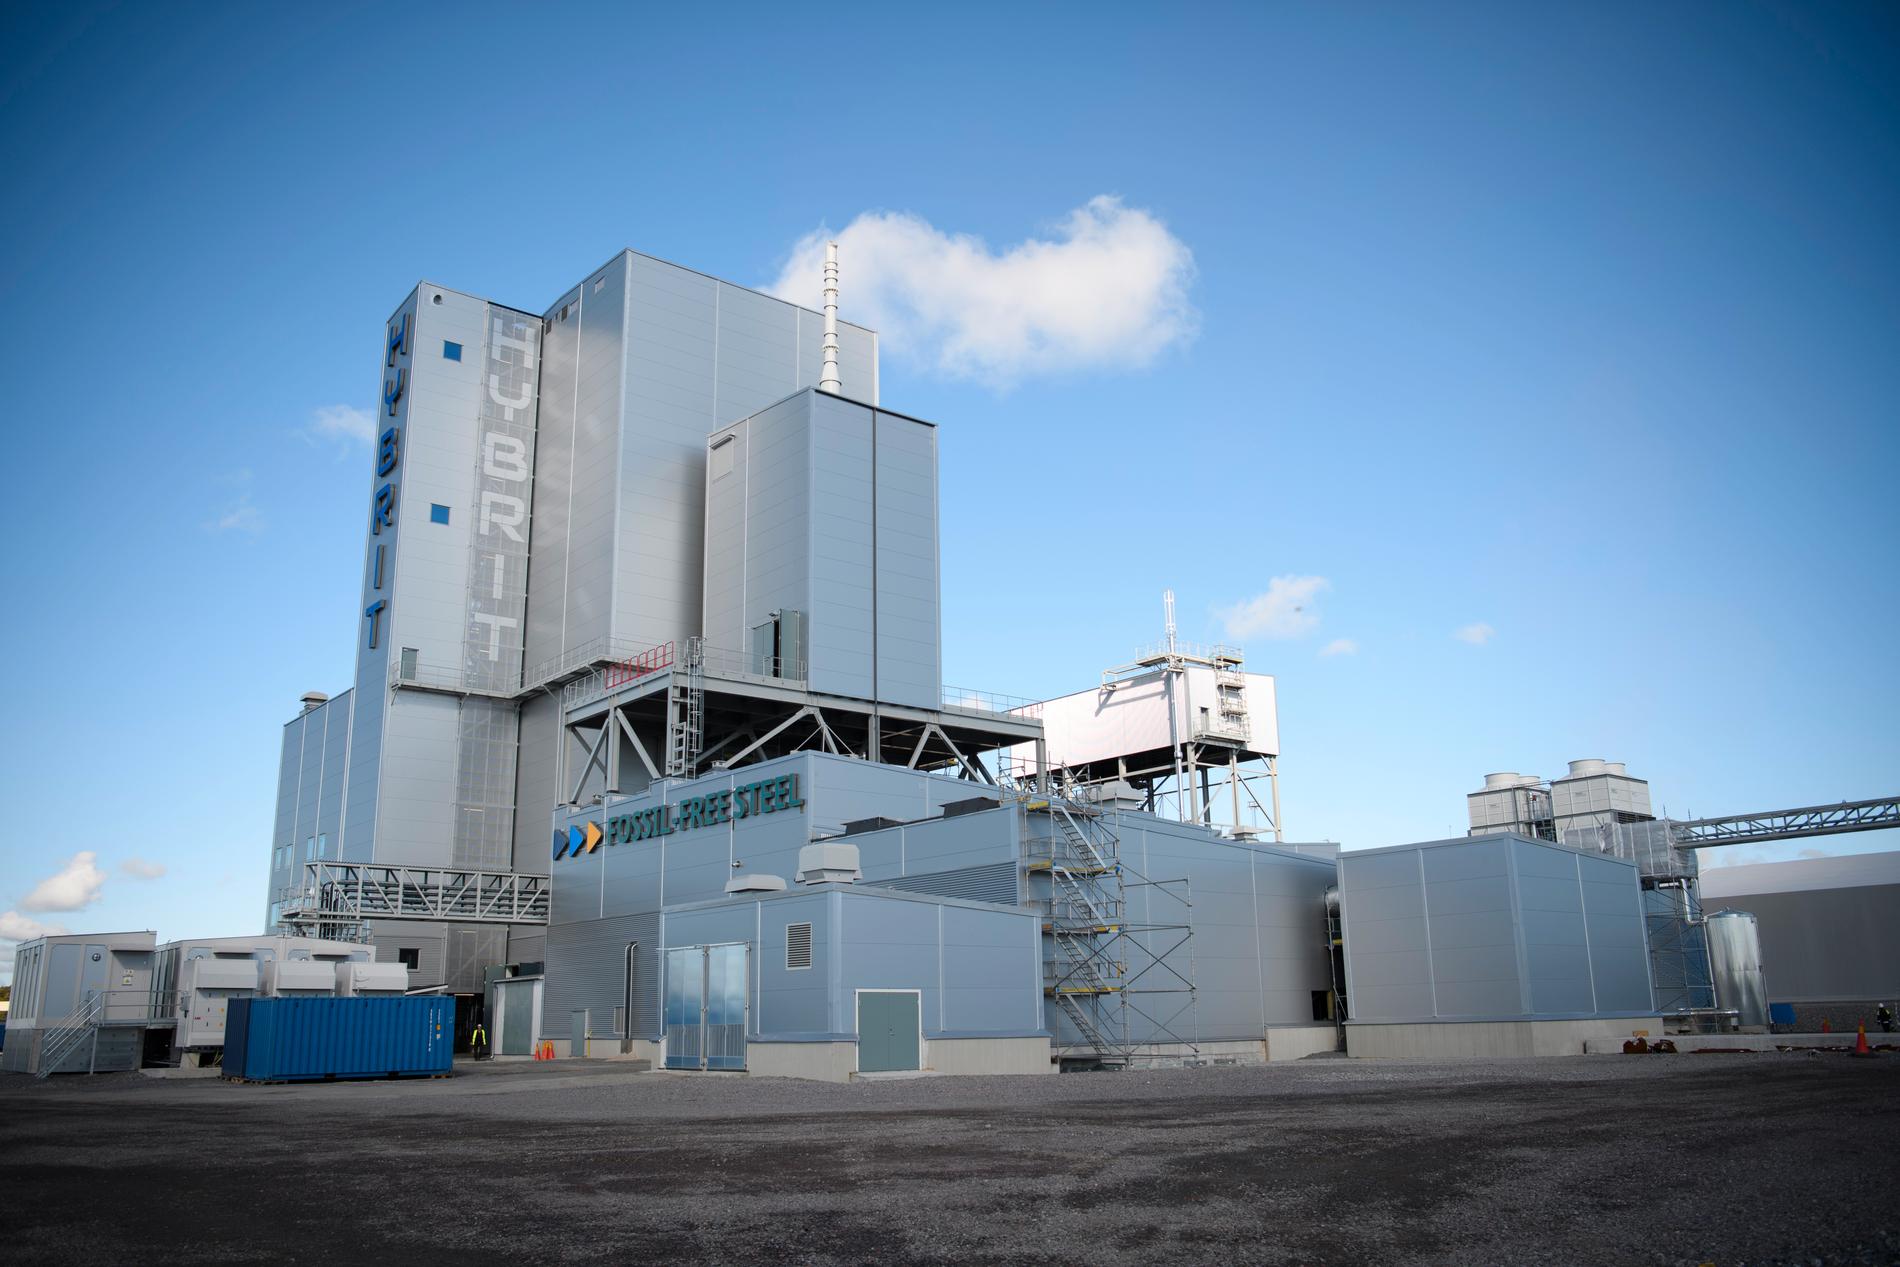 2020 byggdes en pilotanläggning för framställning av fossilfri järnsvamp i Luleå – nu går SSAB vidare och satsar på ny ugn i Oxelösund för drygt sex miljarder. Arkivbild